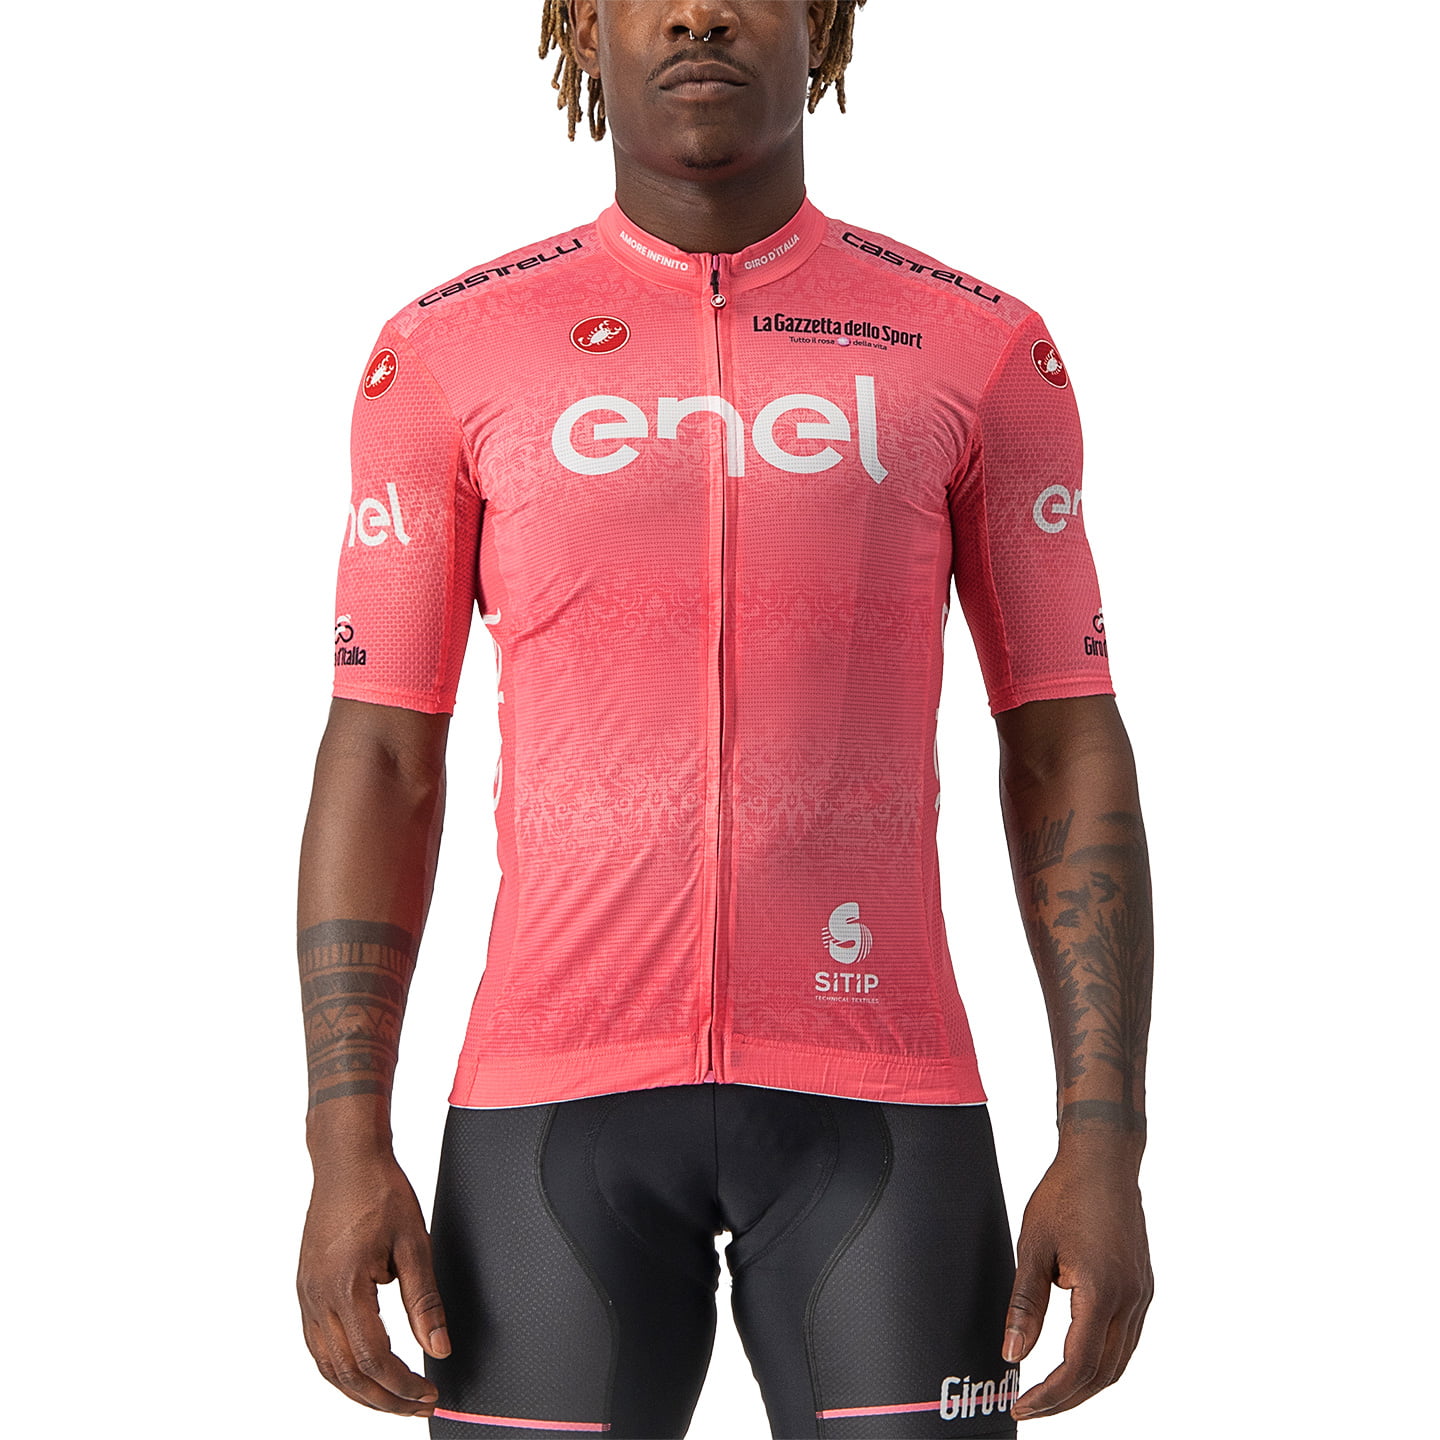 GIRO D’ITALIA Maglia Rosa 2022 Short Sleeve Jersey, for men, size 3XL, Bike shirt, Cycling gear